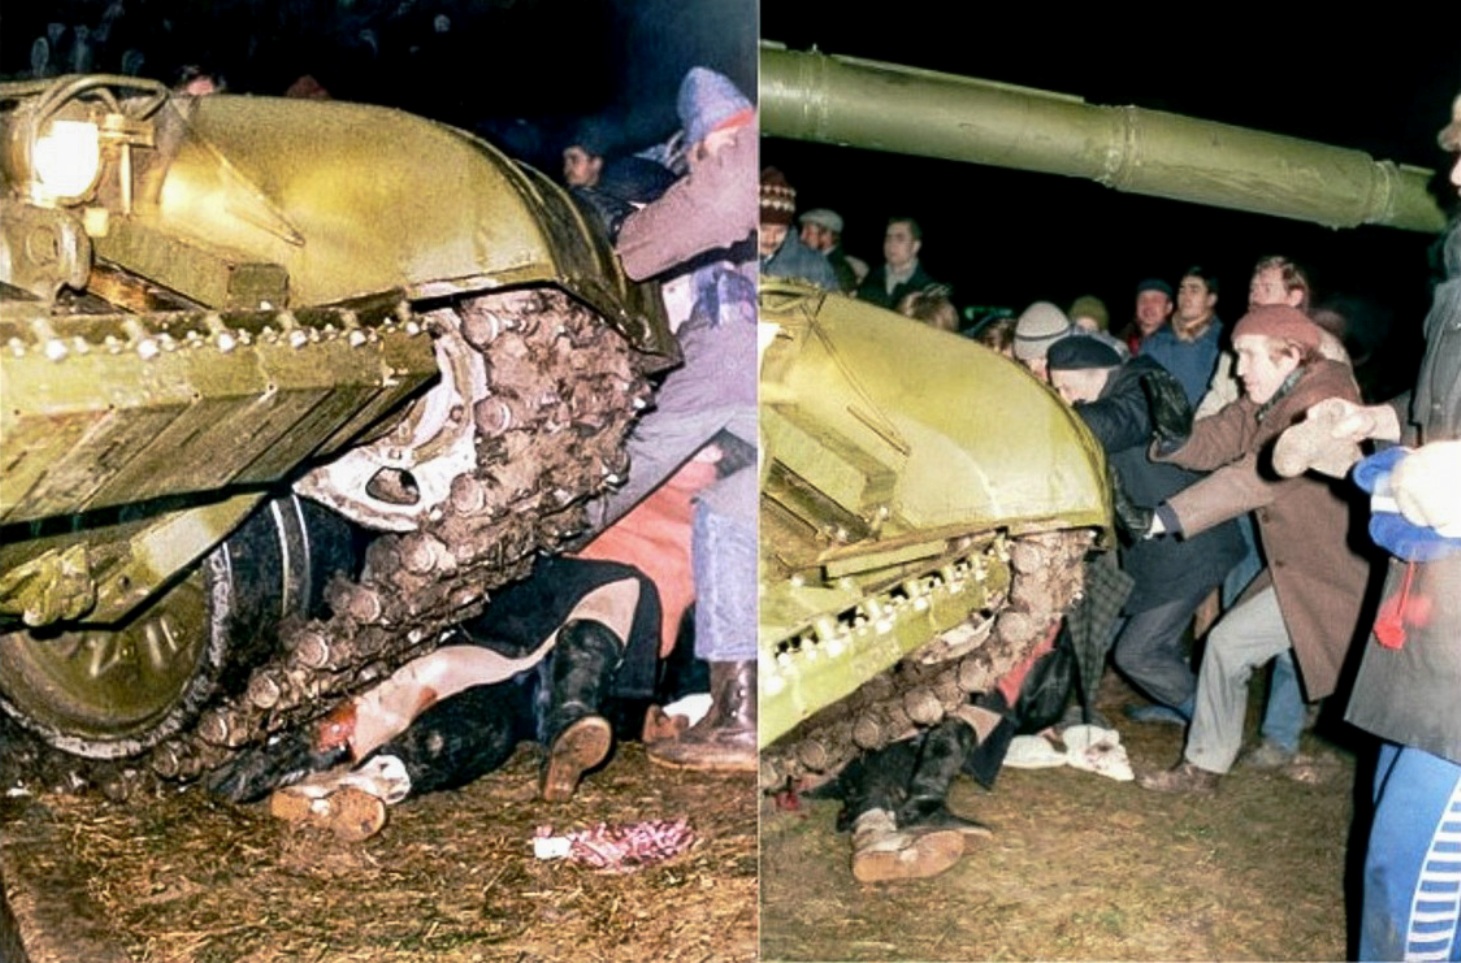 Постановочные наезды танка для фото, призванного показать всему миру «зверства советских военных в Вильнюсе». При этом ни одной жертвы, раздавленной танками, так и не обнаружилось